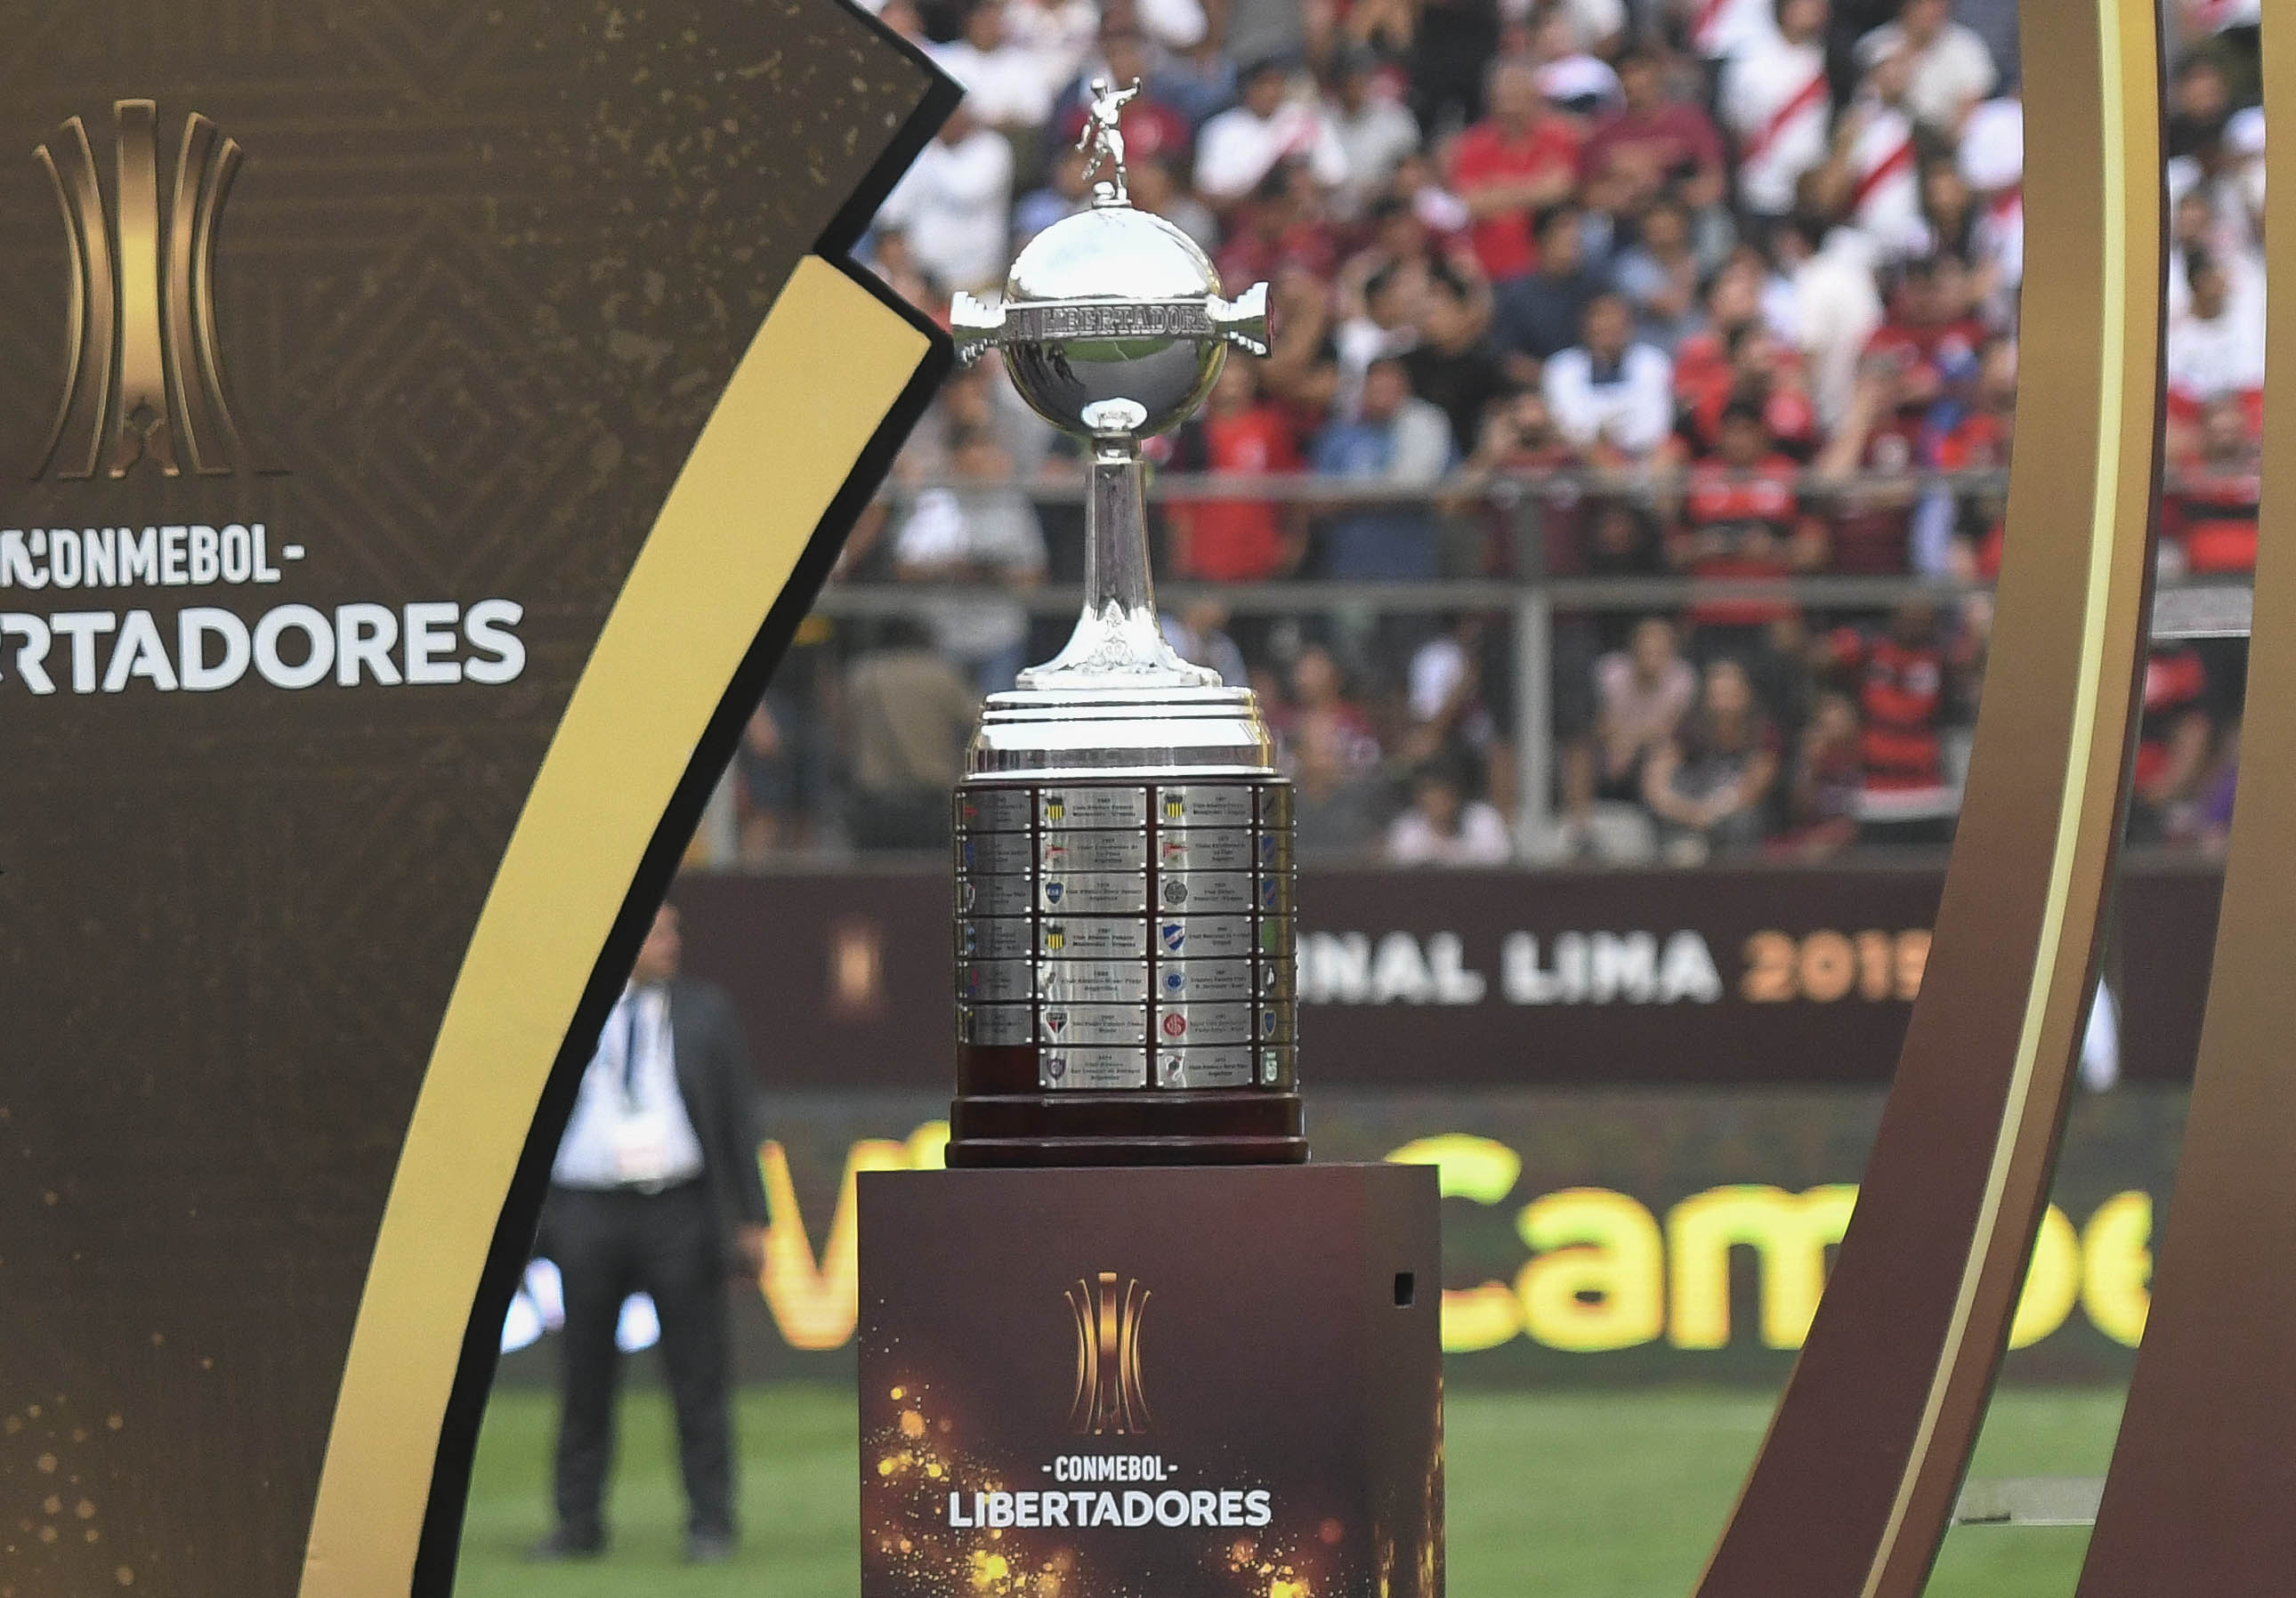 Para conocer al próximo campeón de la Libertadores, primero deberán jugarse 93 encuentros.